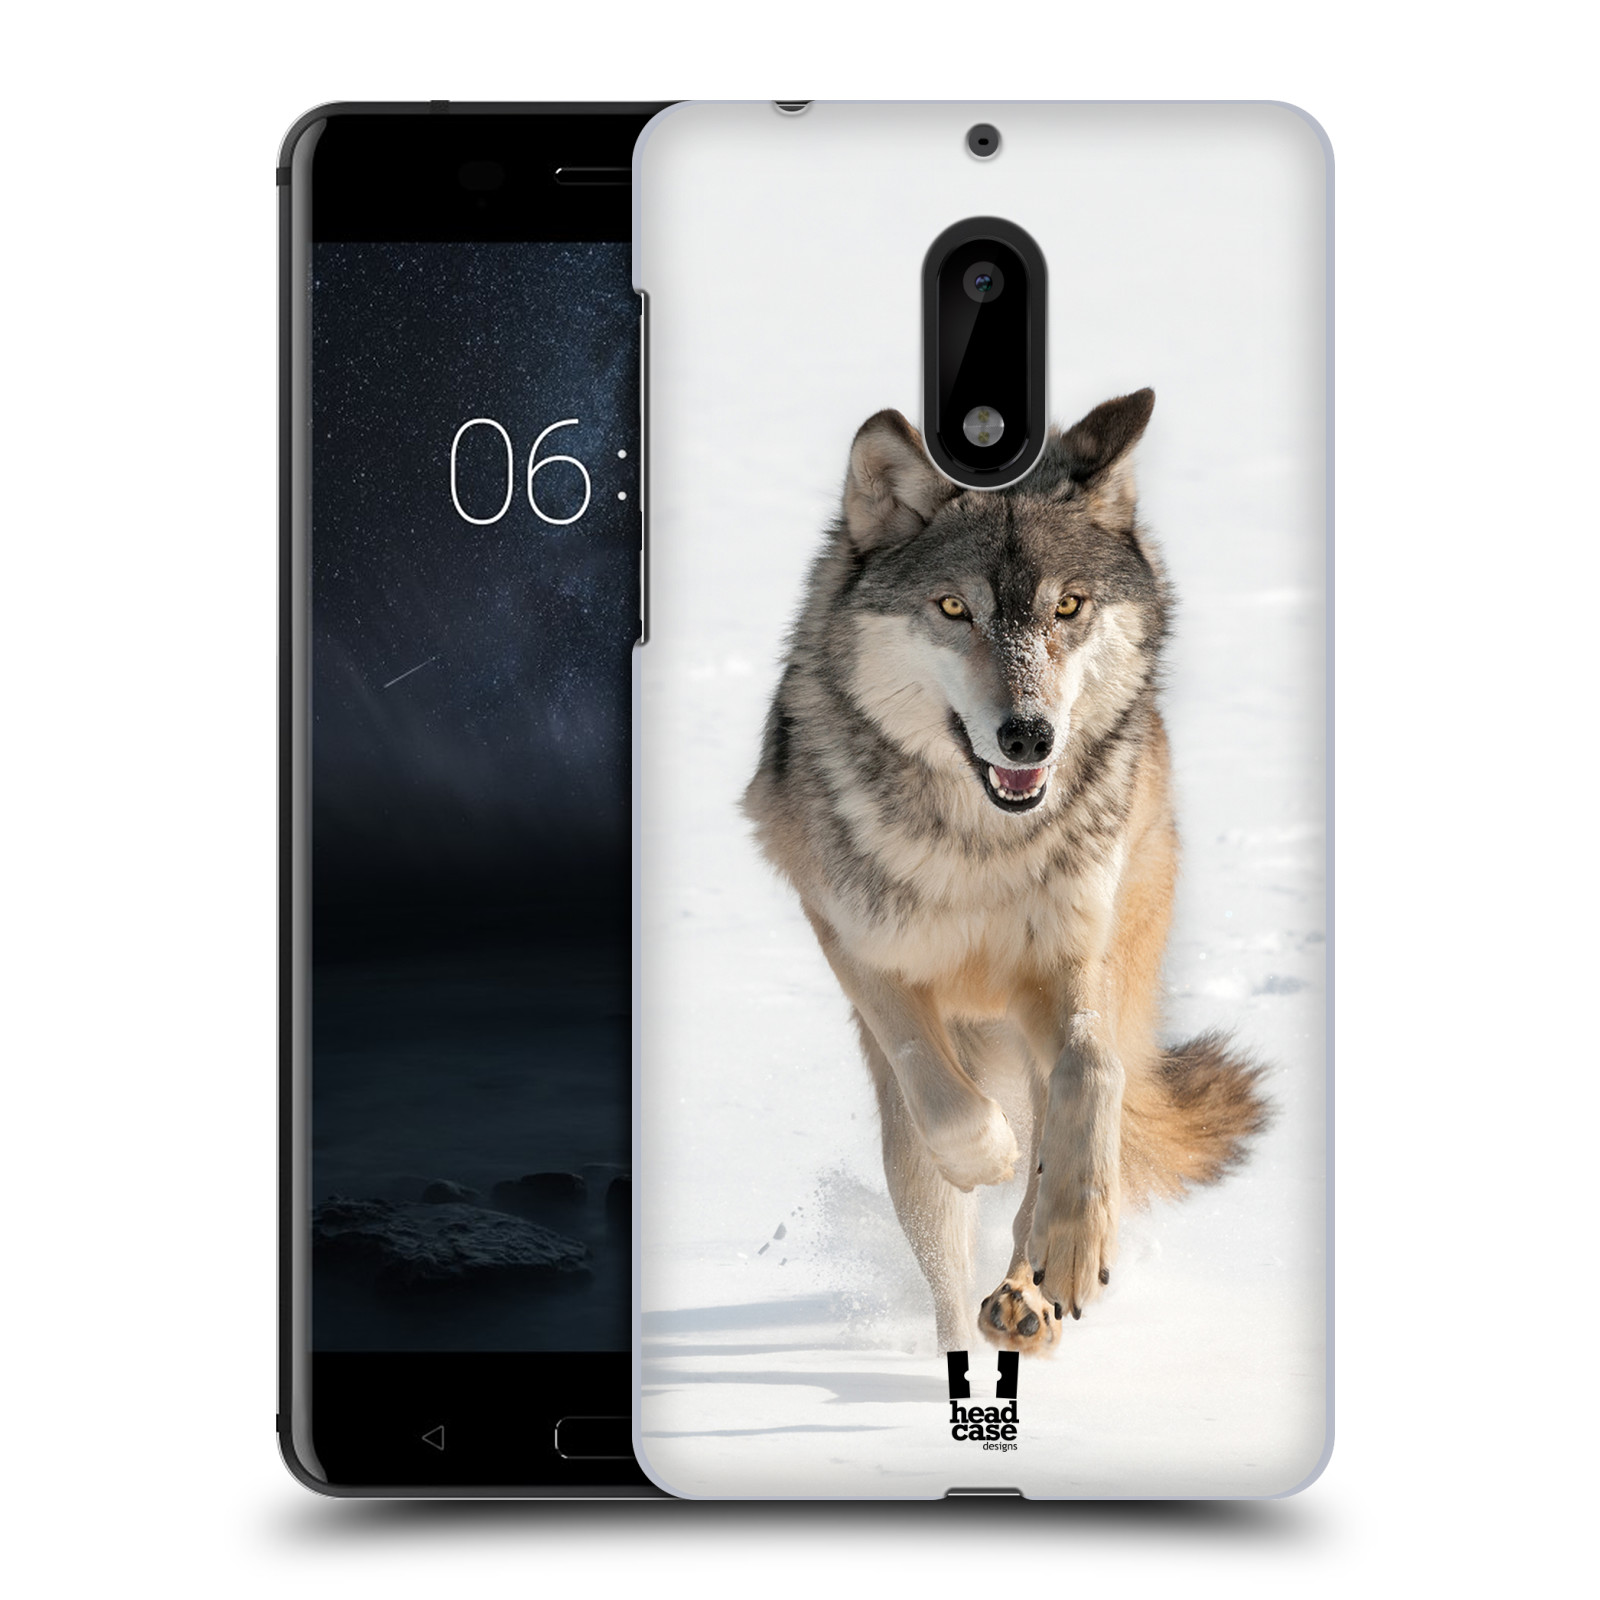 HEAD CASE plastový obal na mobil Nokia 6 vzor Divočina, Divoký život a zvířata foto BĚŽÍCÍ VLK